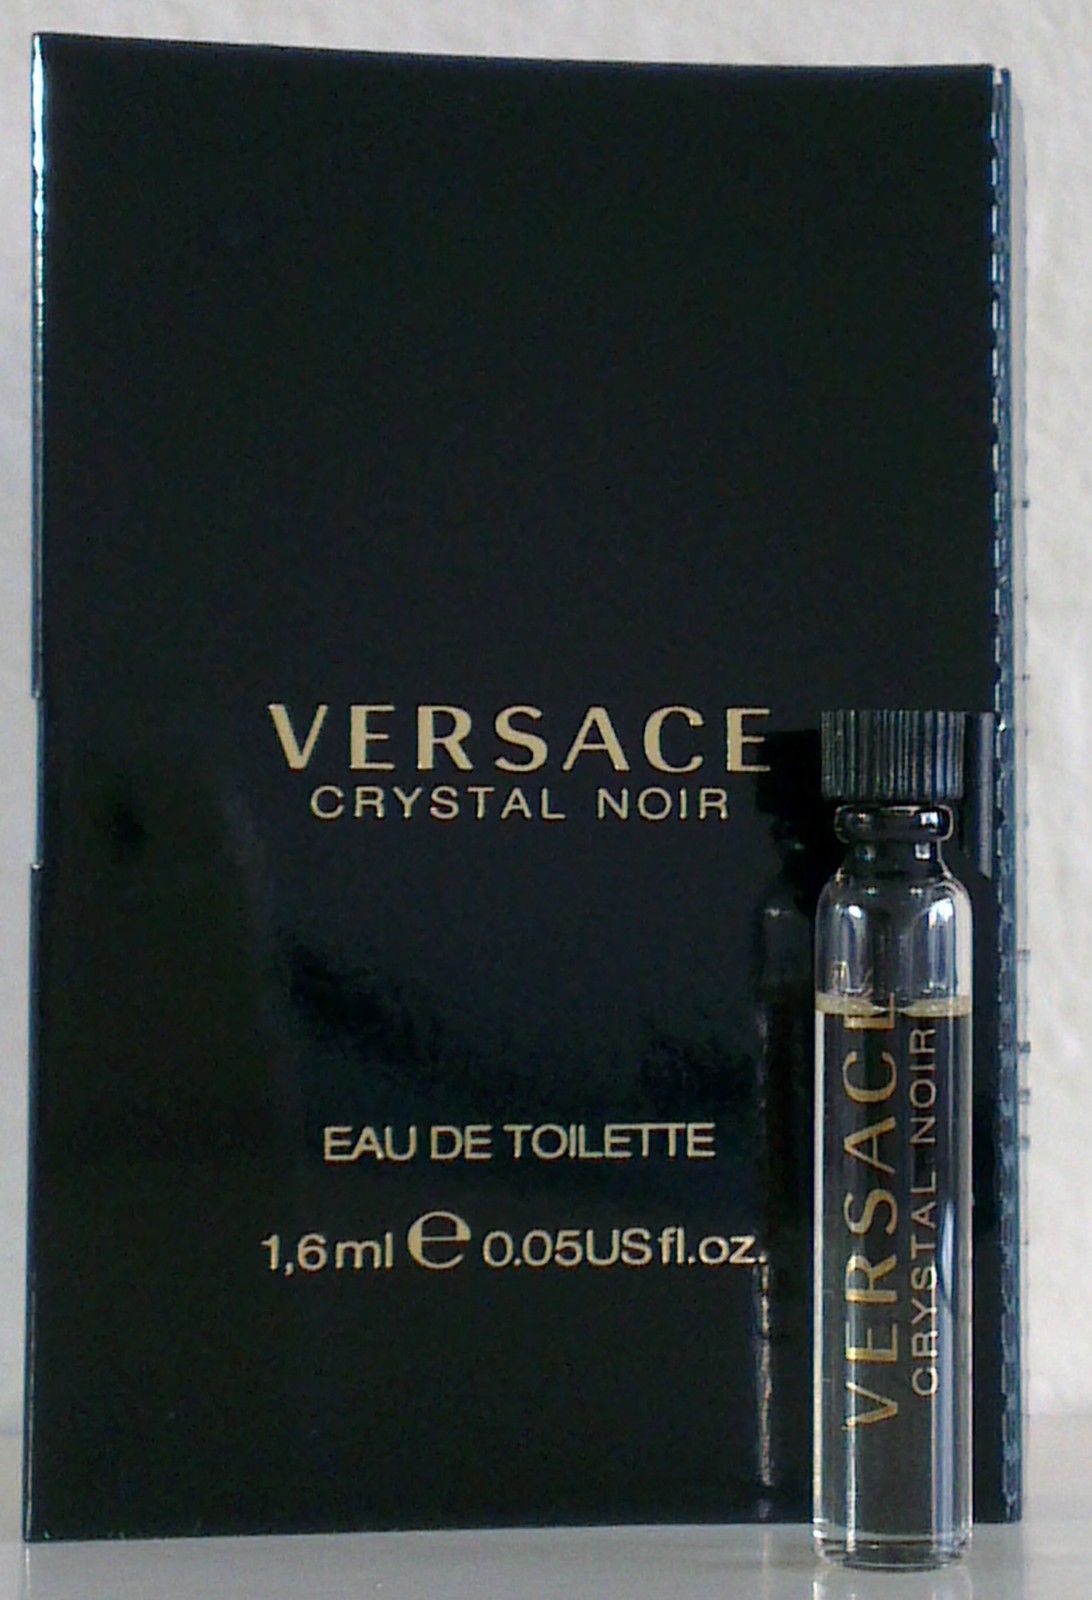 Crystal-Noir-Versace-samples